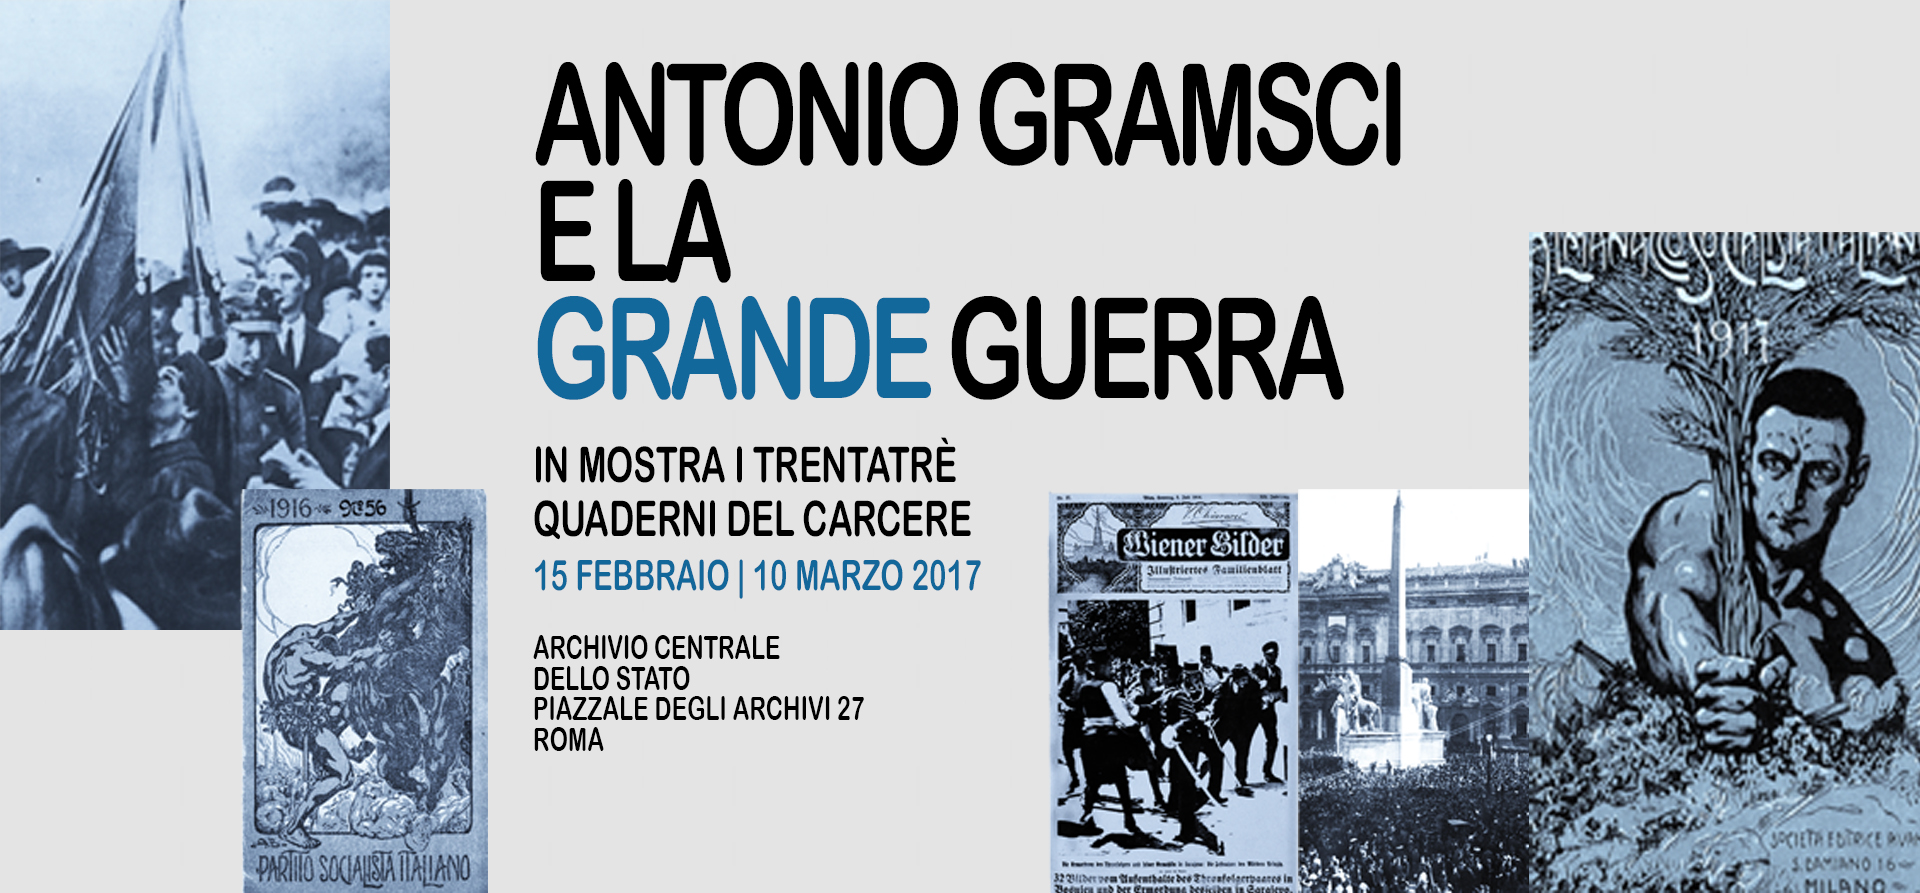 ANTONIO GRAMSCI E LA GRANDE GUERRA